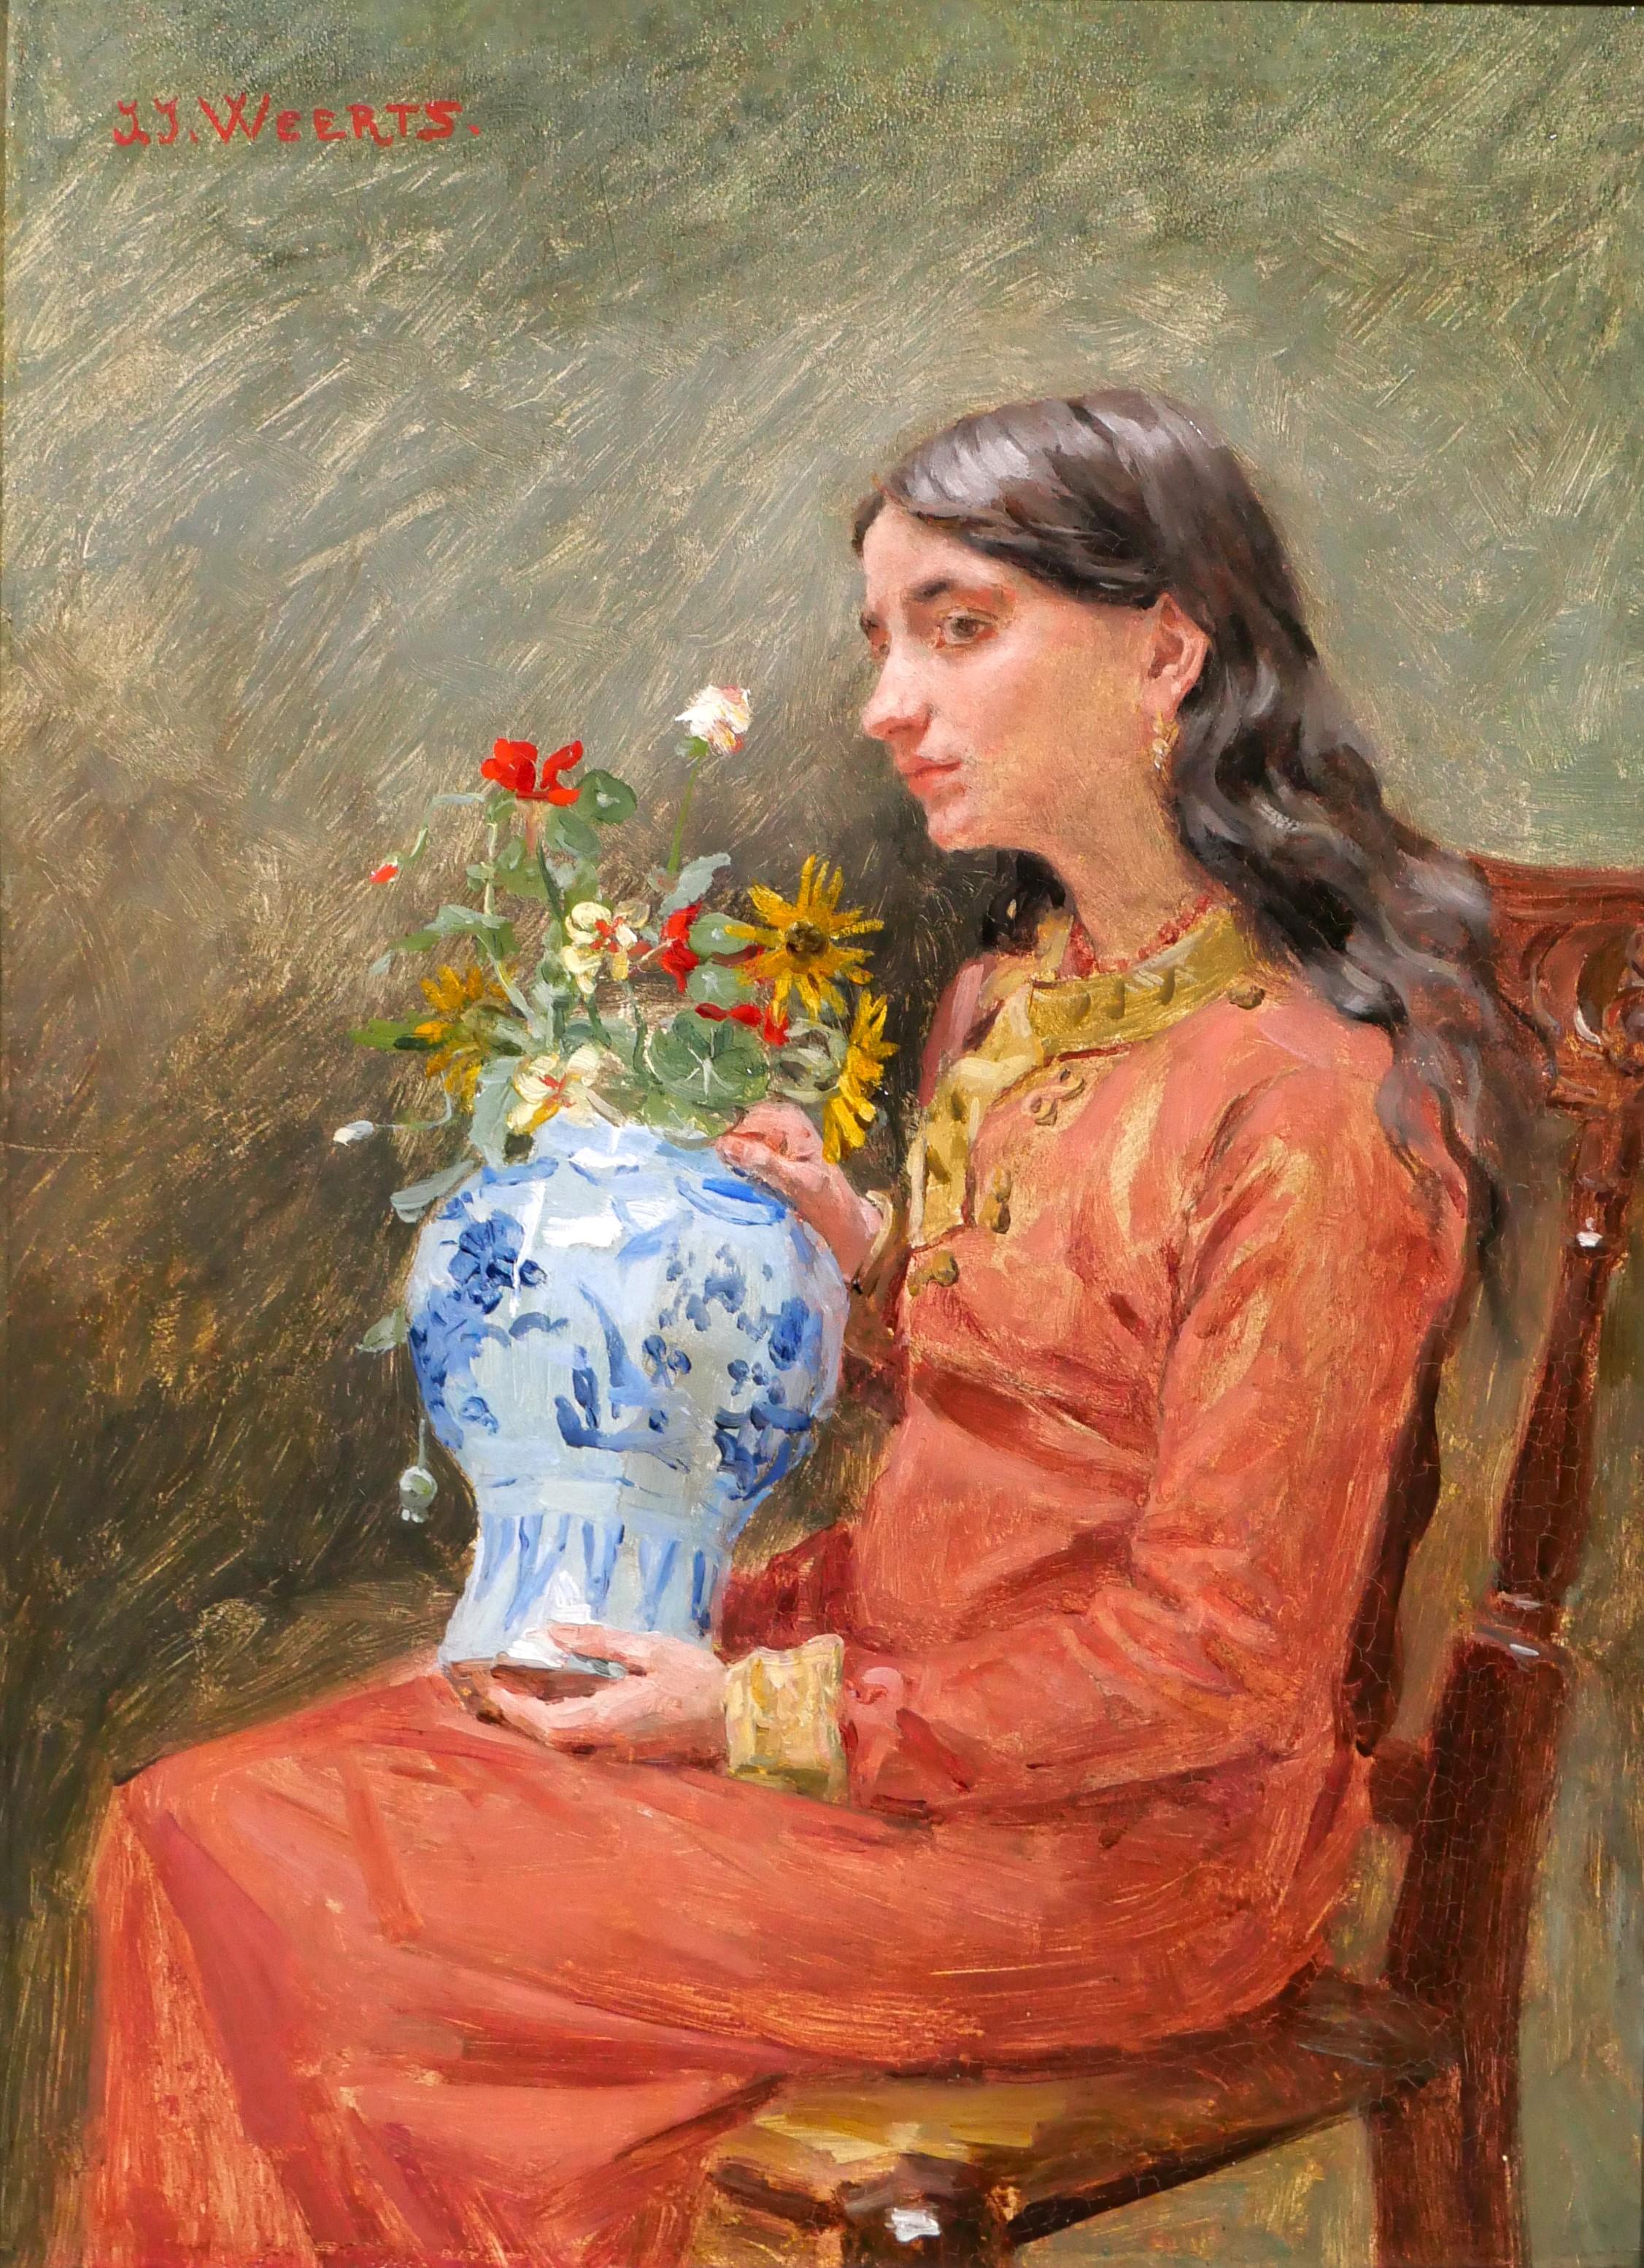 Portrait Painting Jean Joseph Weerts - Portrait d'une jeune femme - rêvez de la beauté éphémère